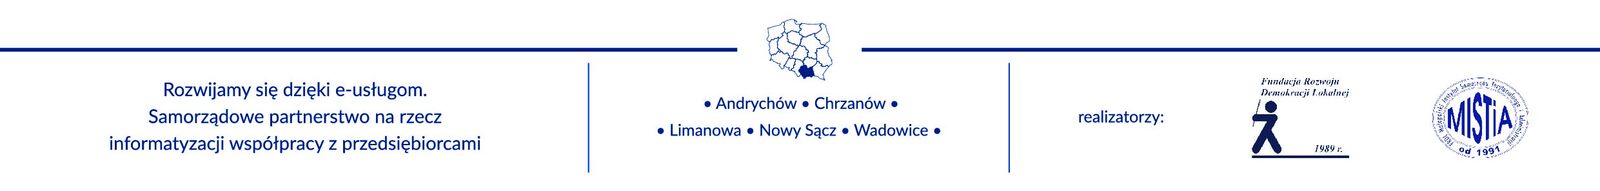 logo 2 - Nasze miasto bierze udział w projekcie FRDL MISTiA, który wspiera rozwój e-usług w małopolskich miastach